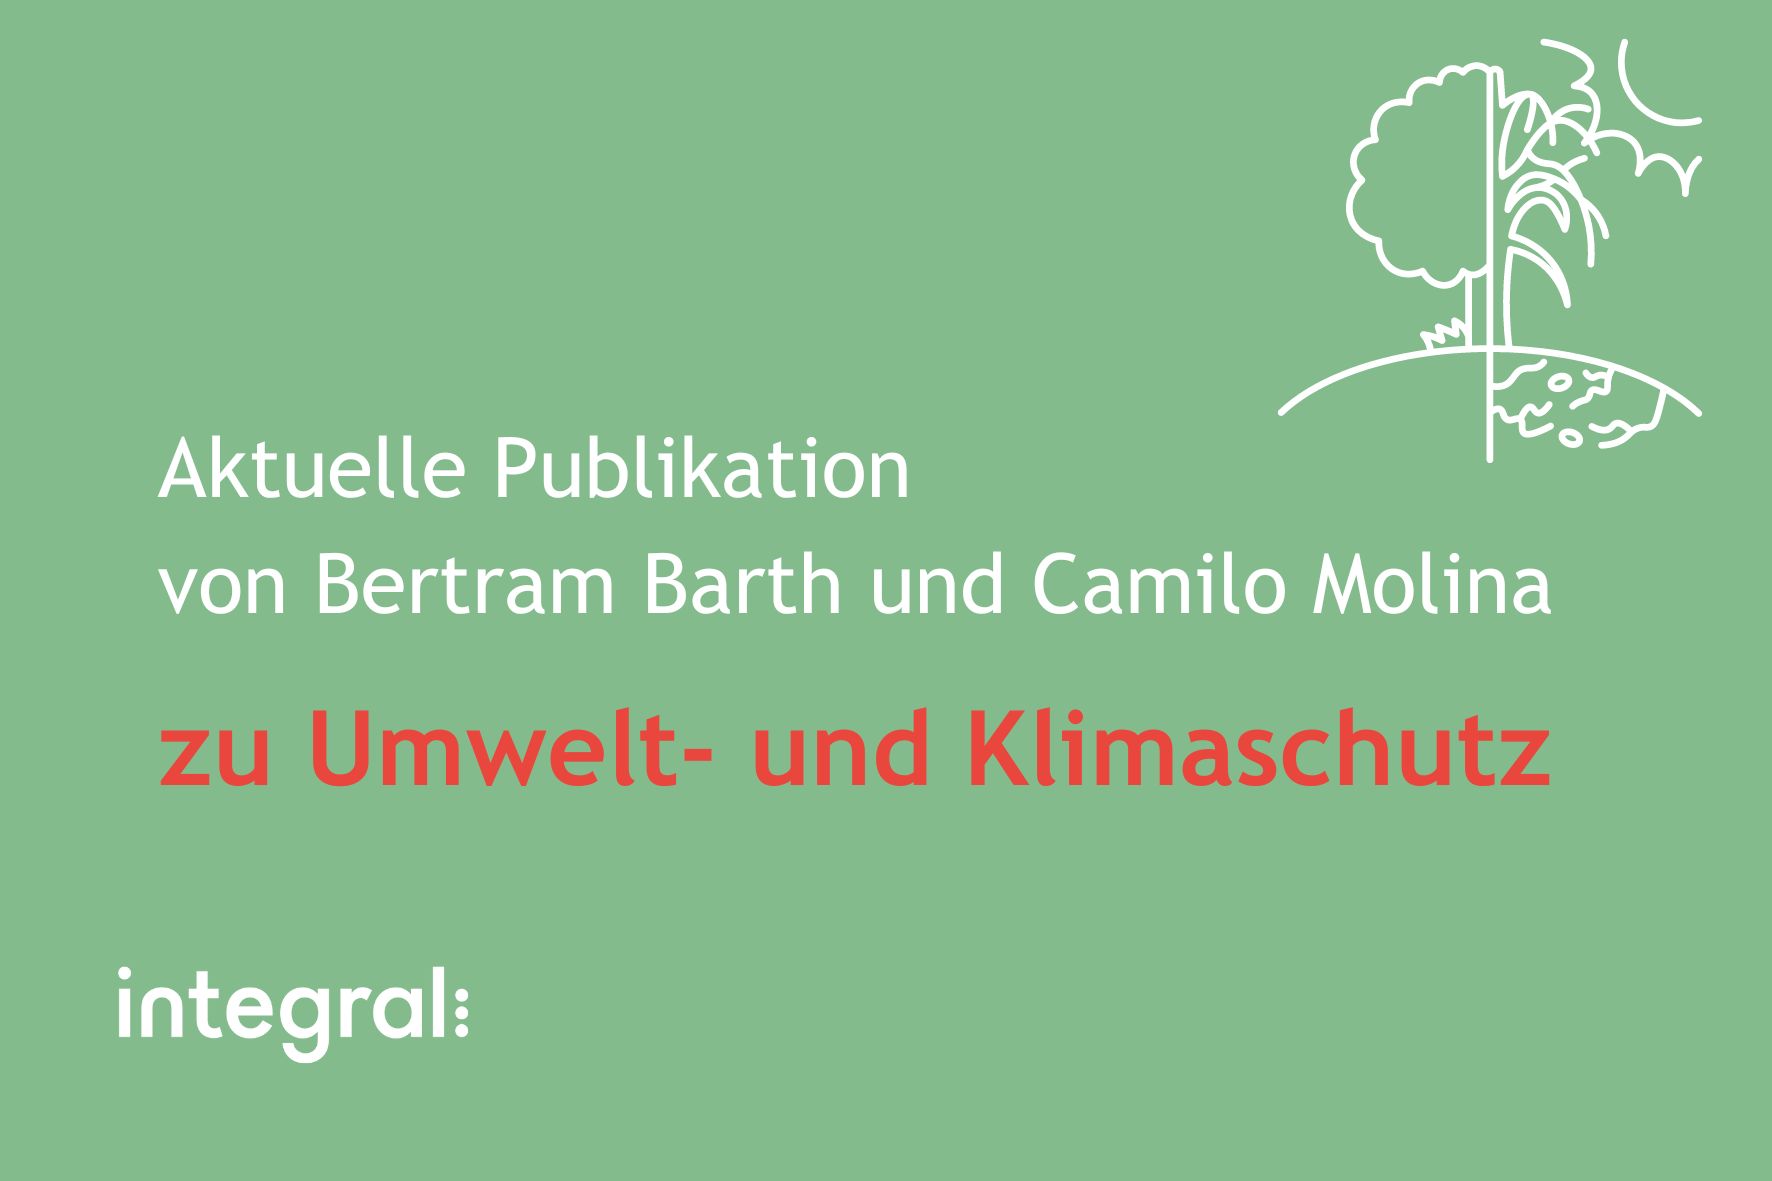 Aktuelle Publikation zu Umwelt- und Klimaschutz von Bertram Barth und Camilo Molina